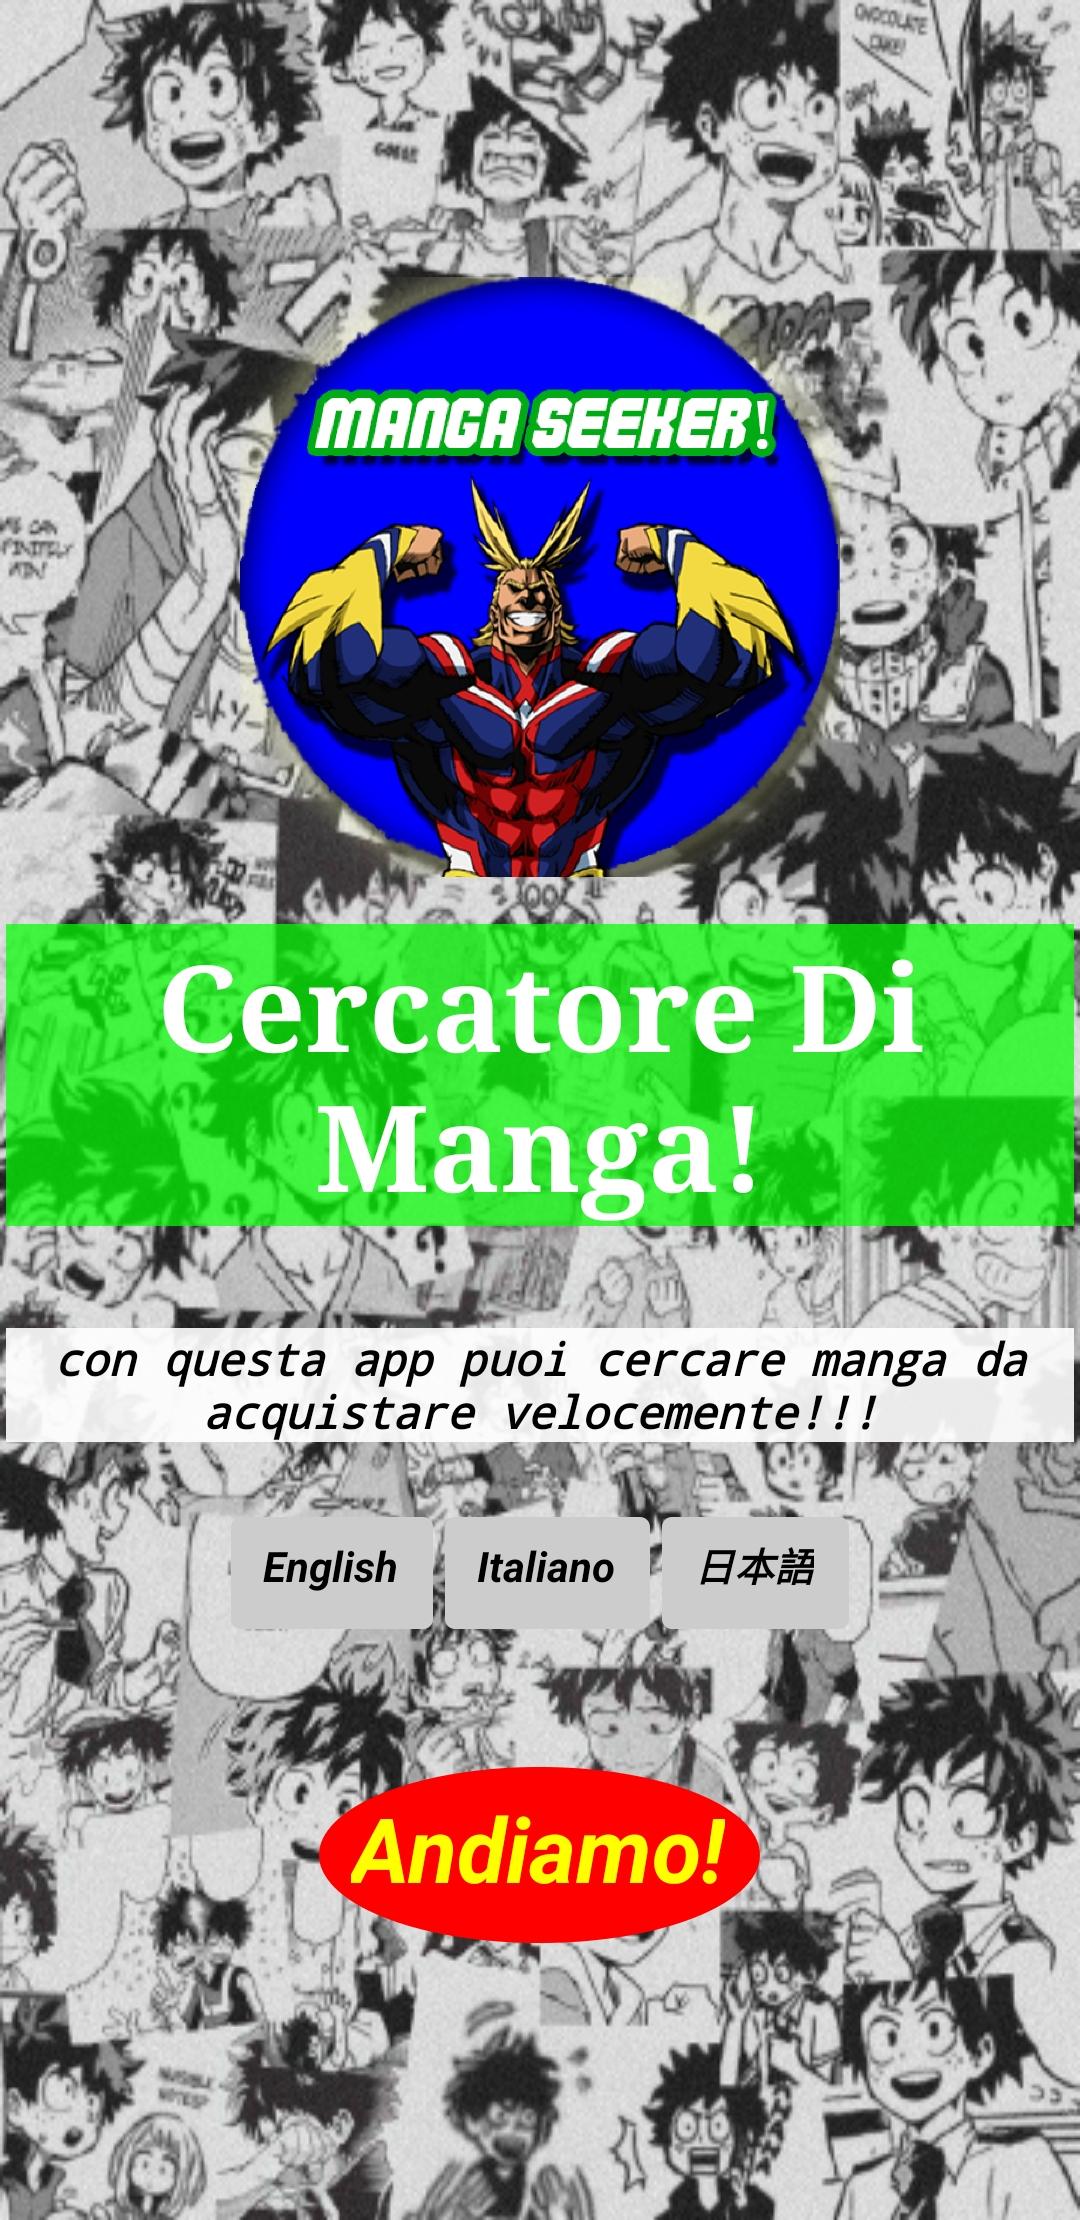 Manga Seeker! 1.1 Screenshot 6